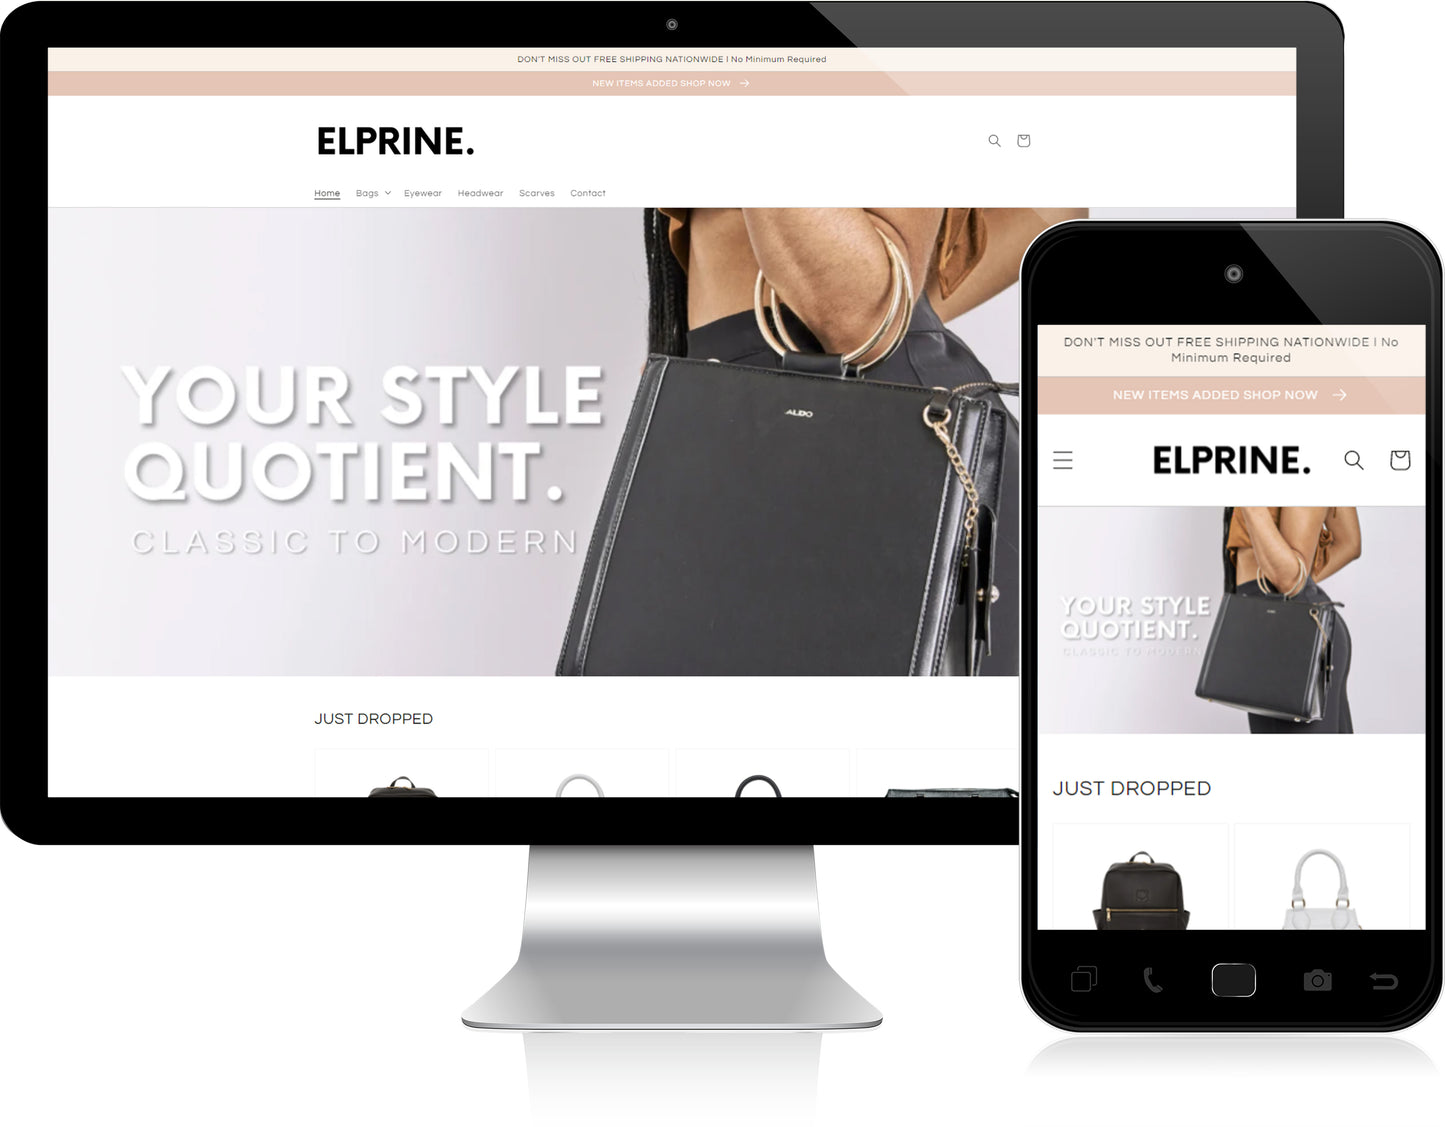 Elprine.com